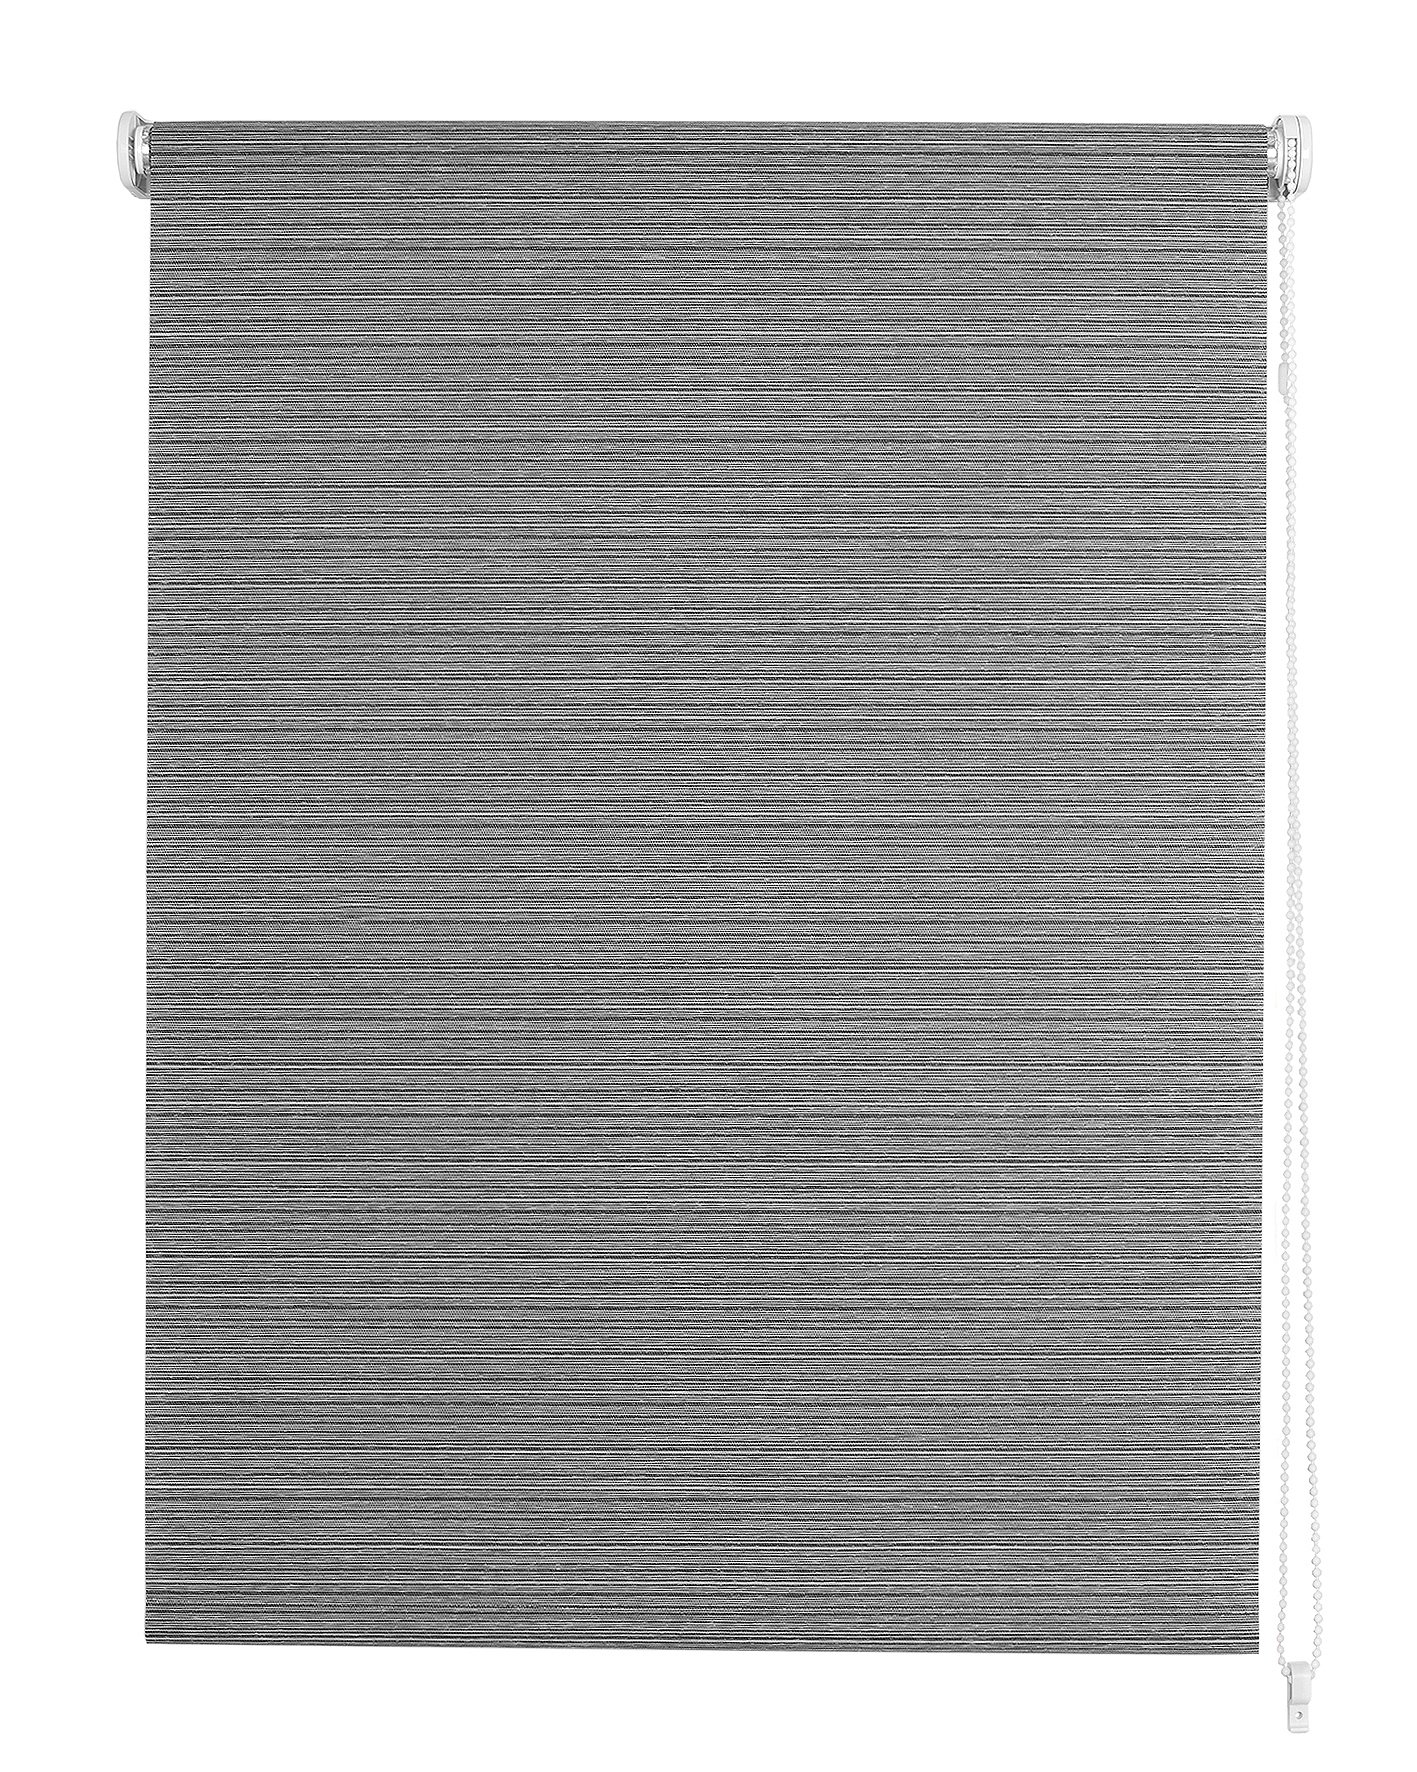 Klasikinė ritininė užuolaida VIENNA, pilkos sp., 100 x 170 cm, 100 % poliesteris - 2